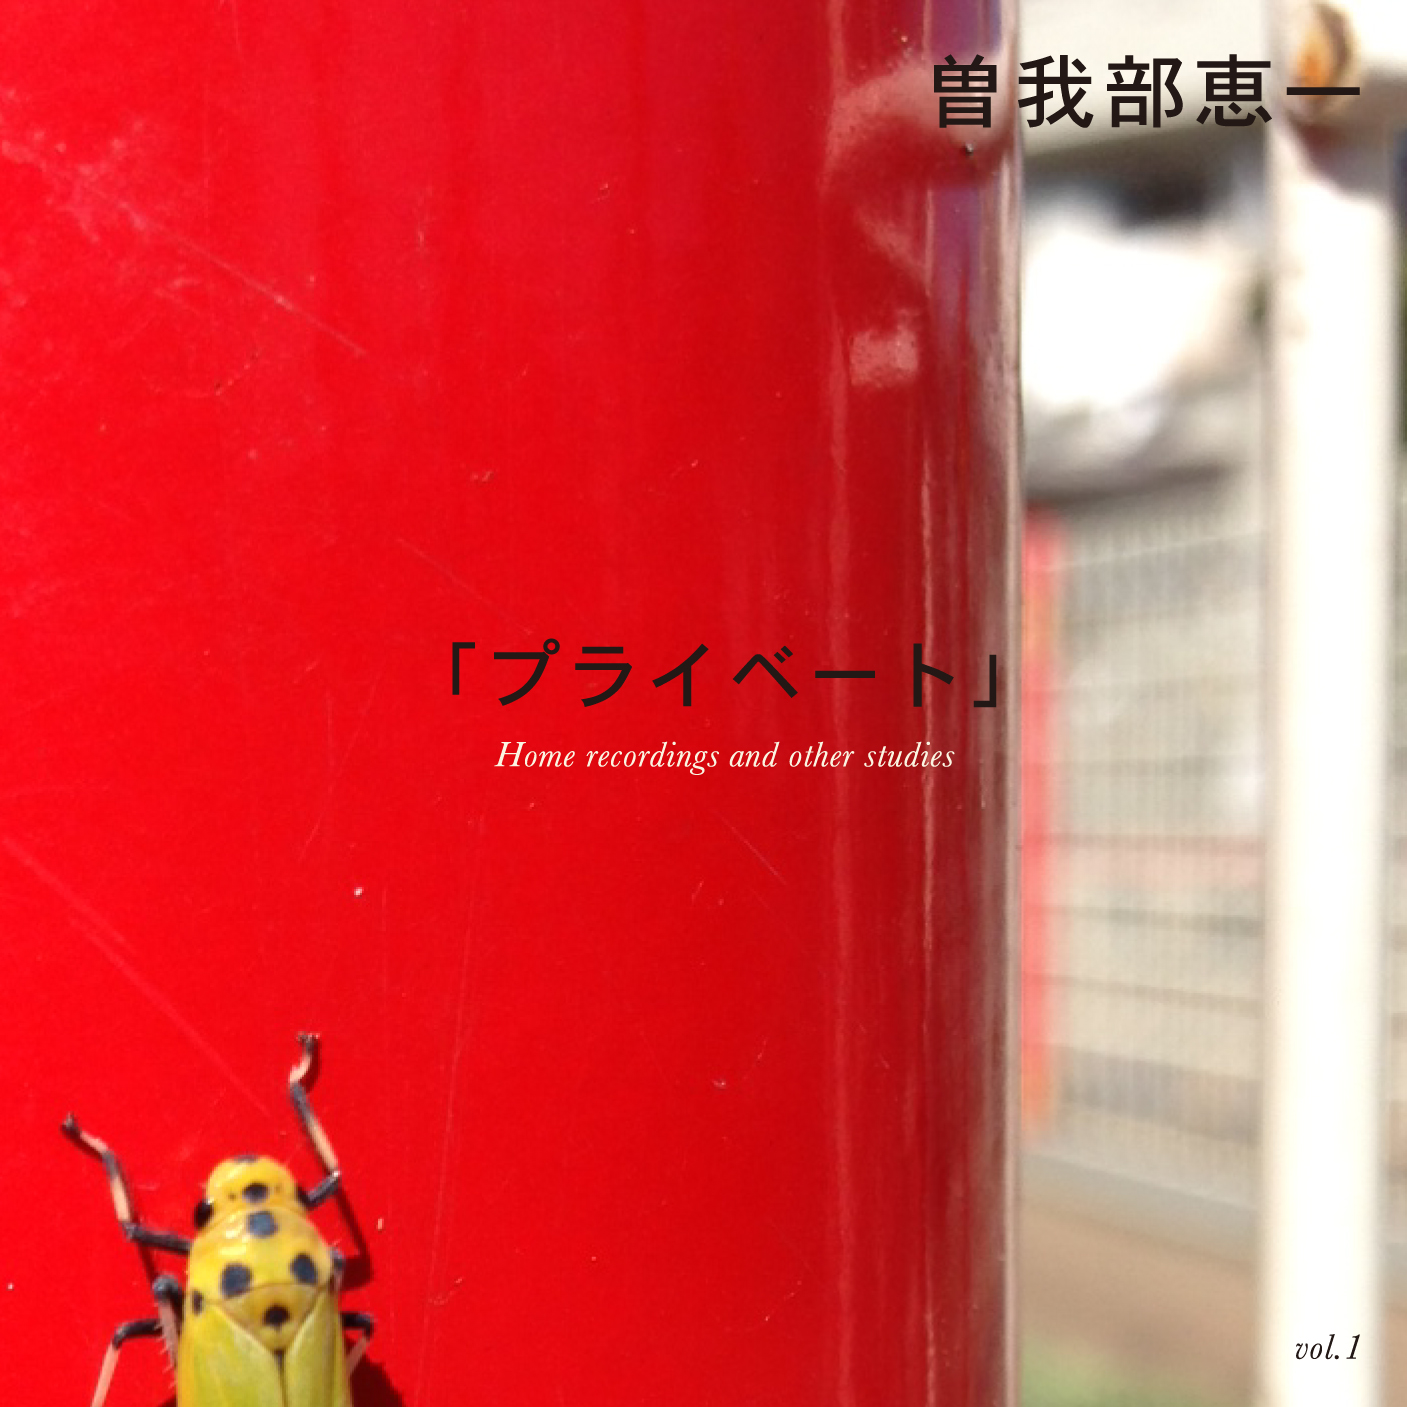 『曽我部恵一 BEST 2001-2013』のROSEオンラインショップ限定 特典CDの詳細です。